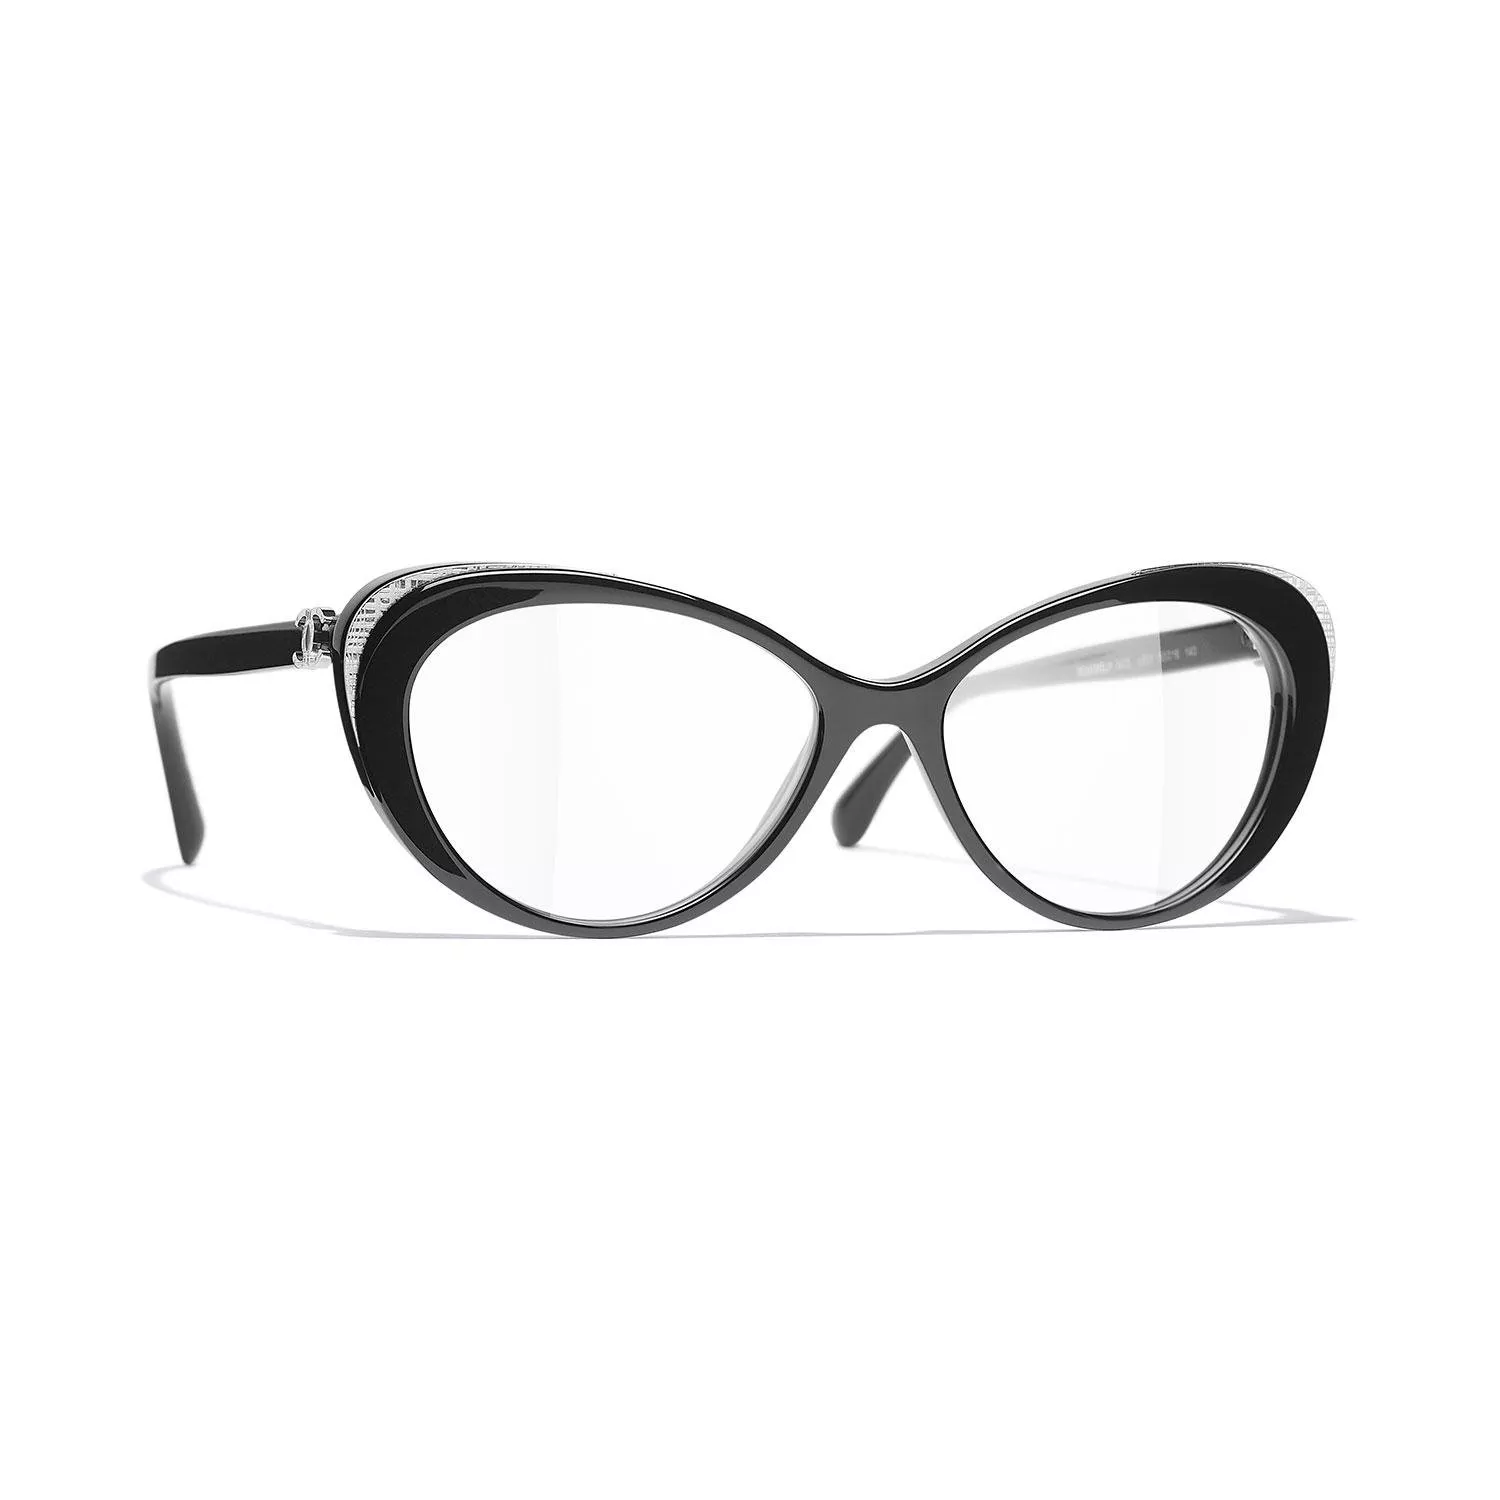 شانيل تُطلق مجموعة نظارات خريف 2020